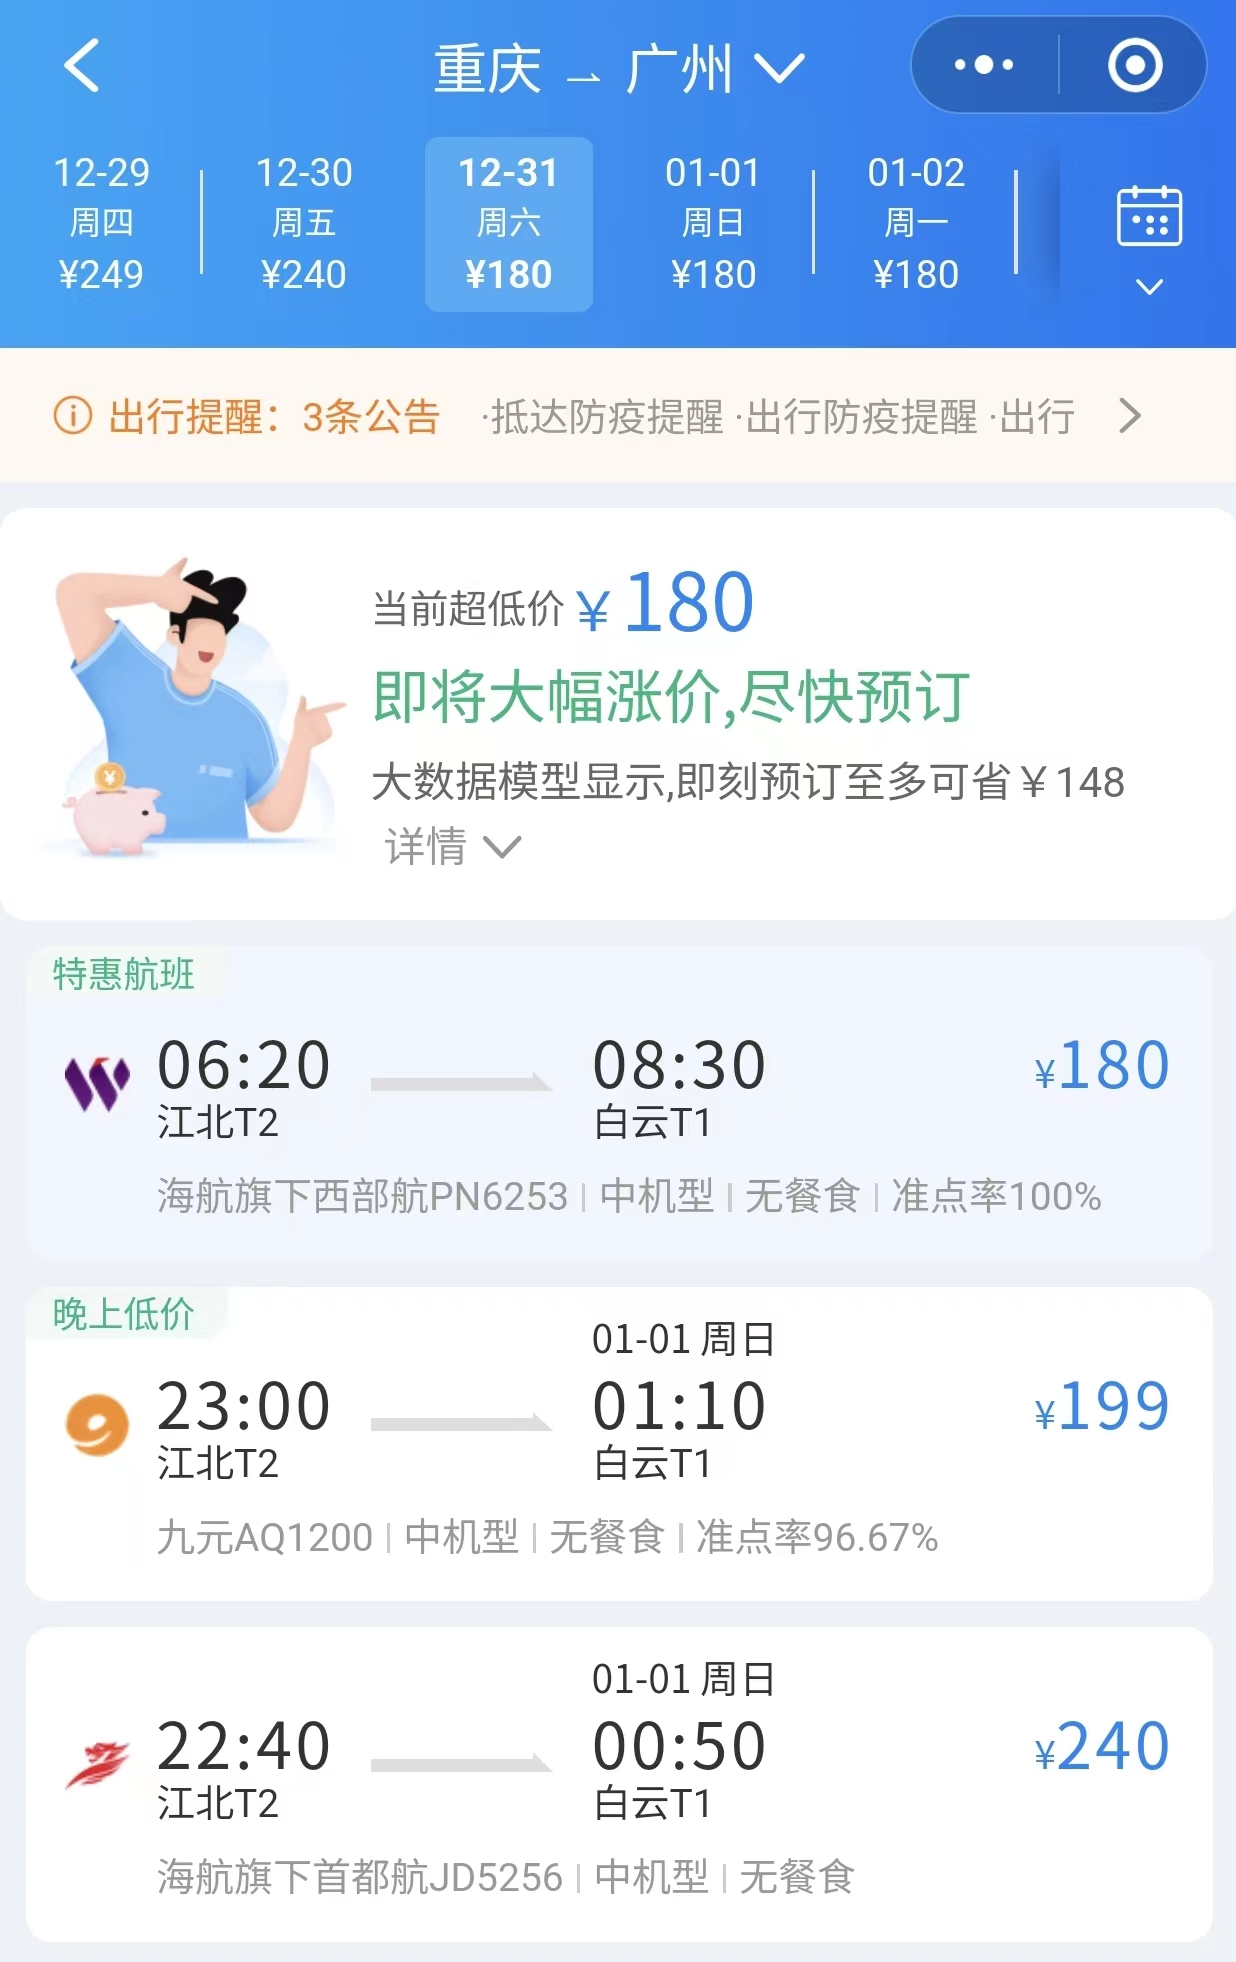 新航季重庆江北机场新增11个航点_重庆市人民政府网